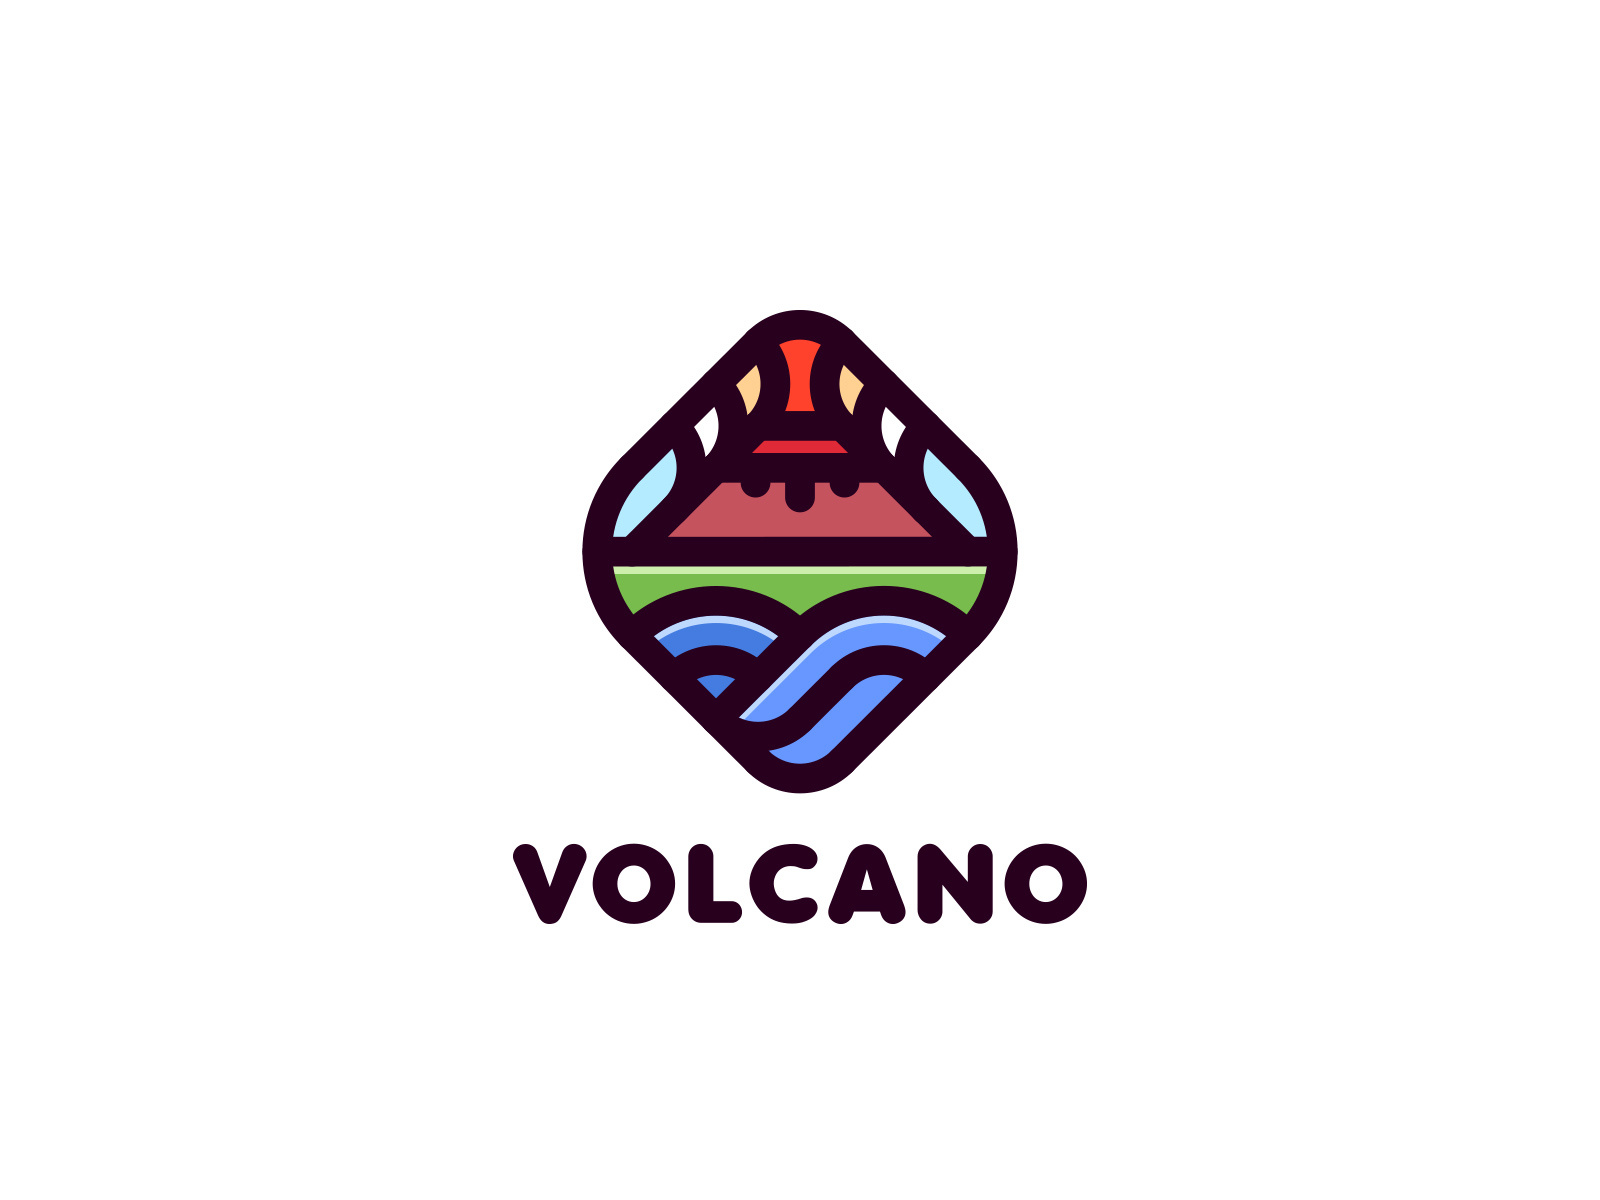 Volcano Logo by Nikita Golubev on Dribbble